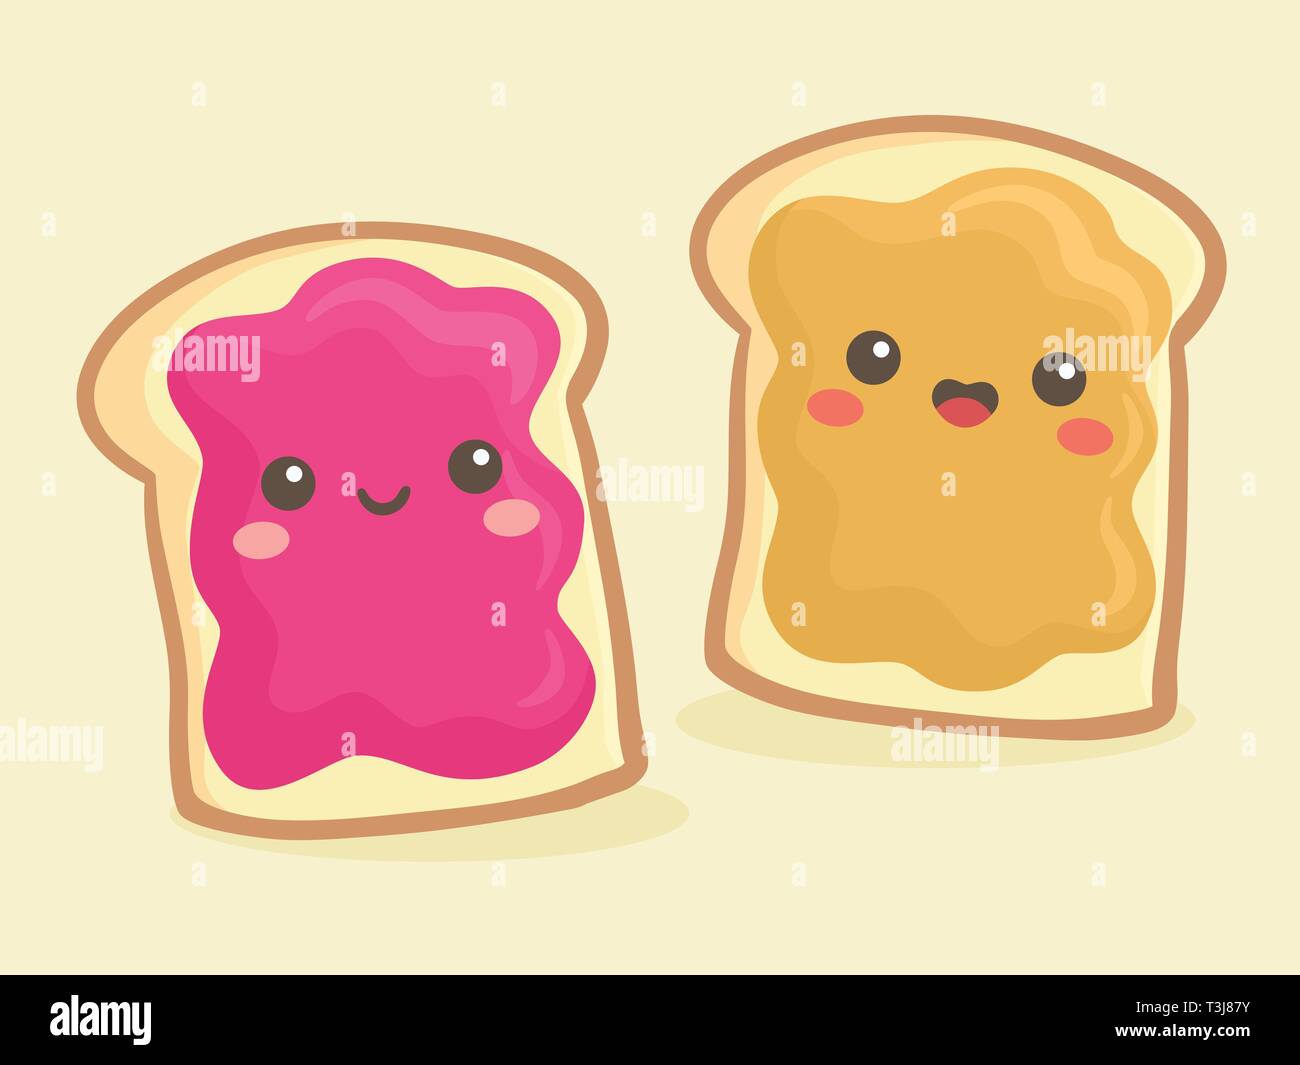 Cute Peanut Butter und Marmelade Marmelade Brot Brot Sandwich Vector Illustration Cartoon Lächeln Stock Vektor